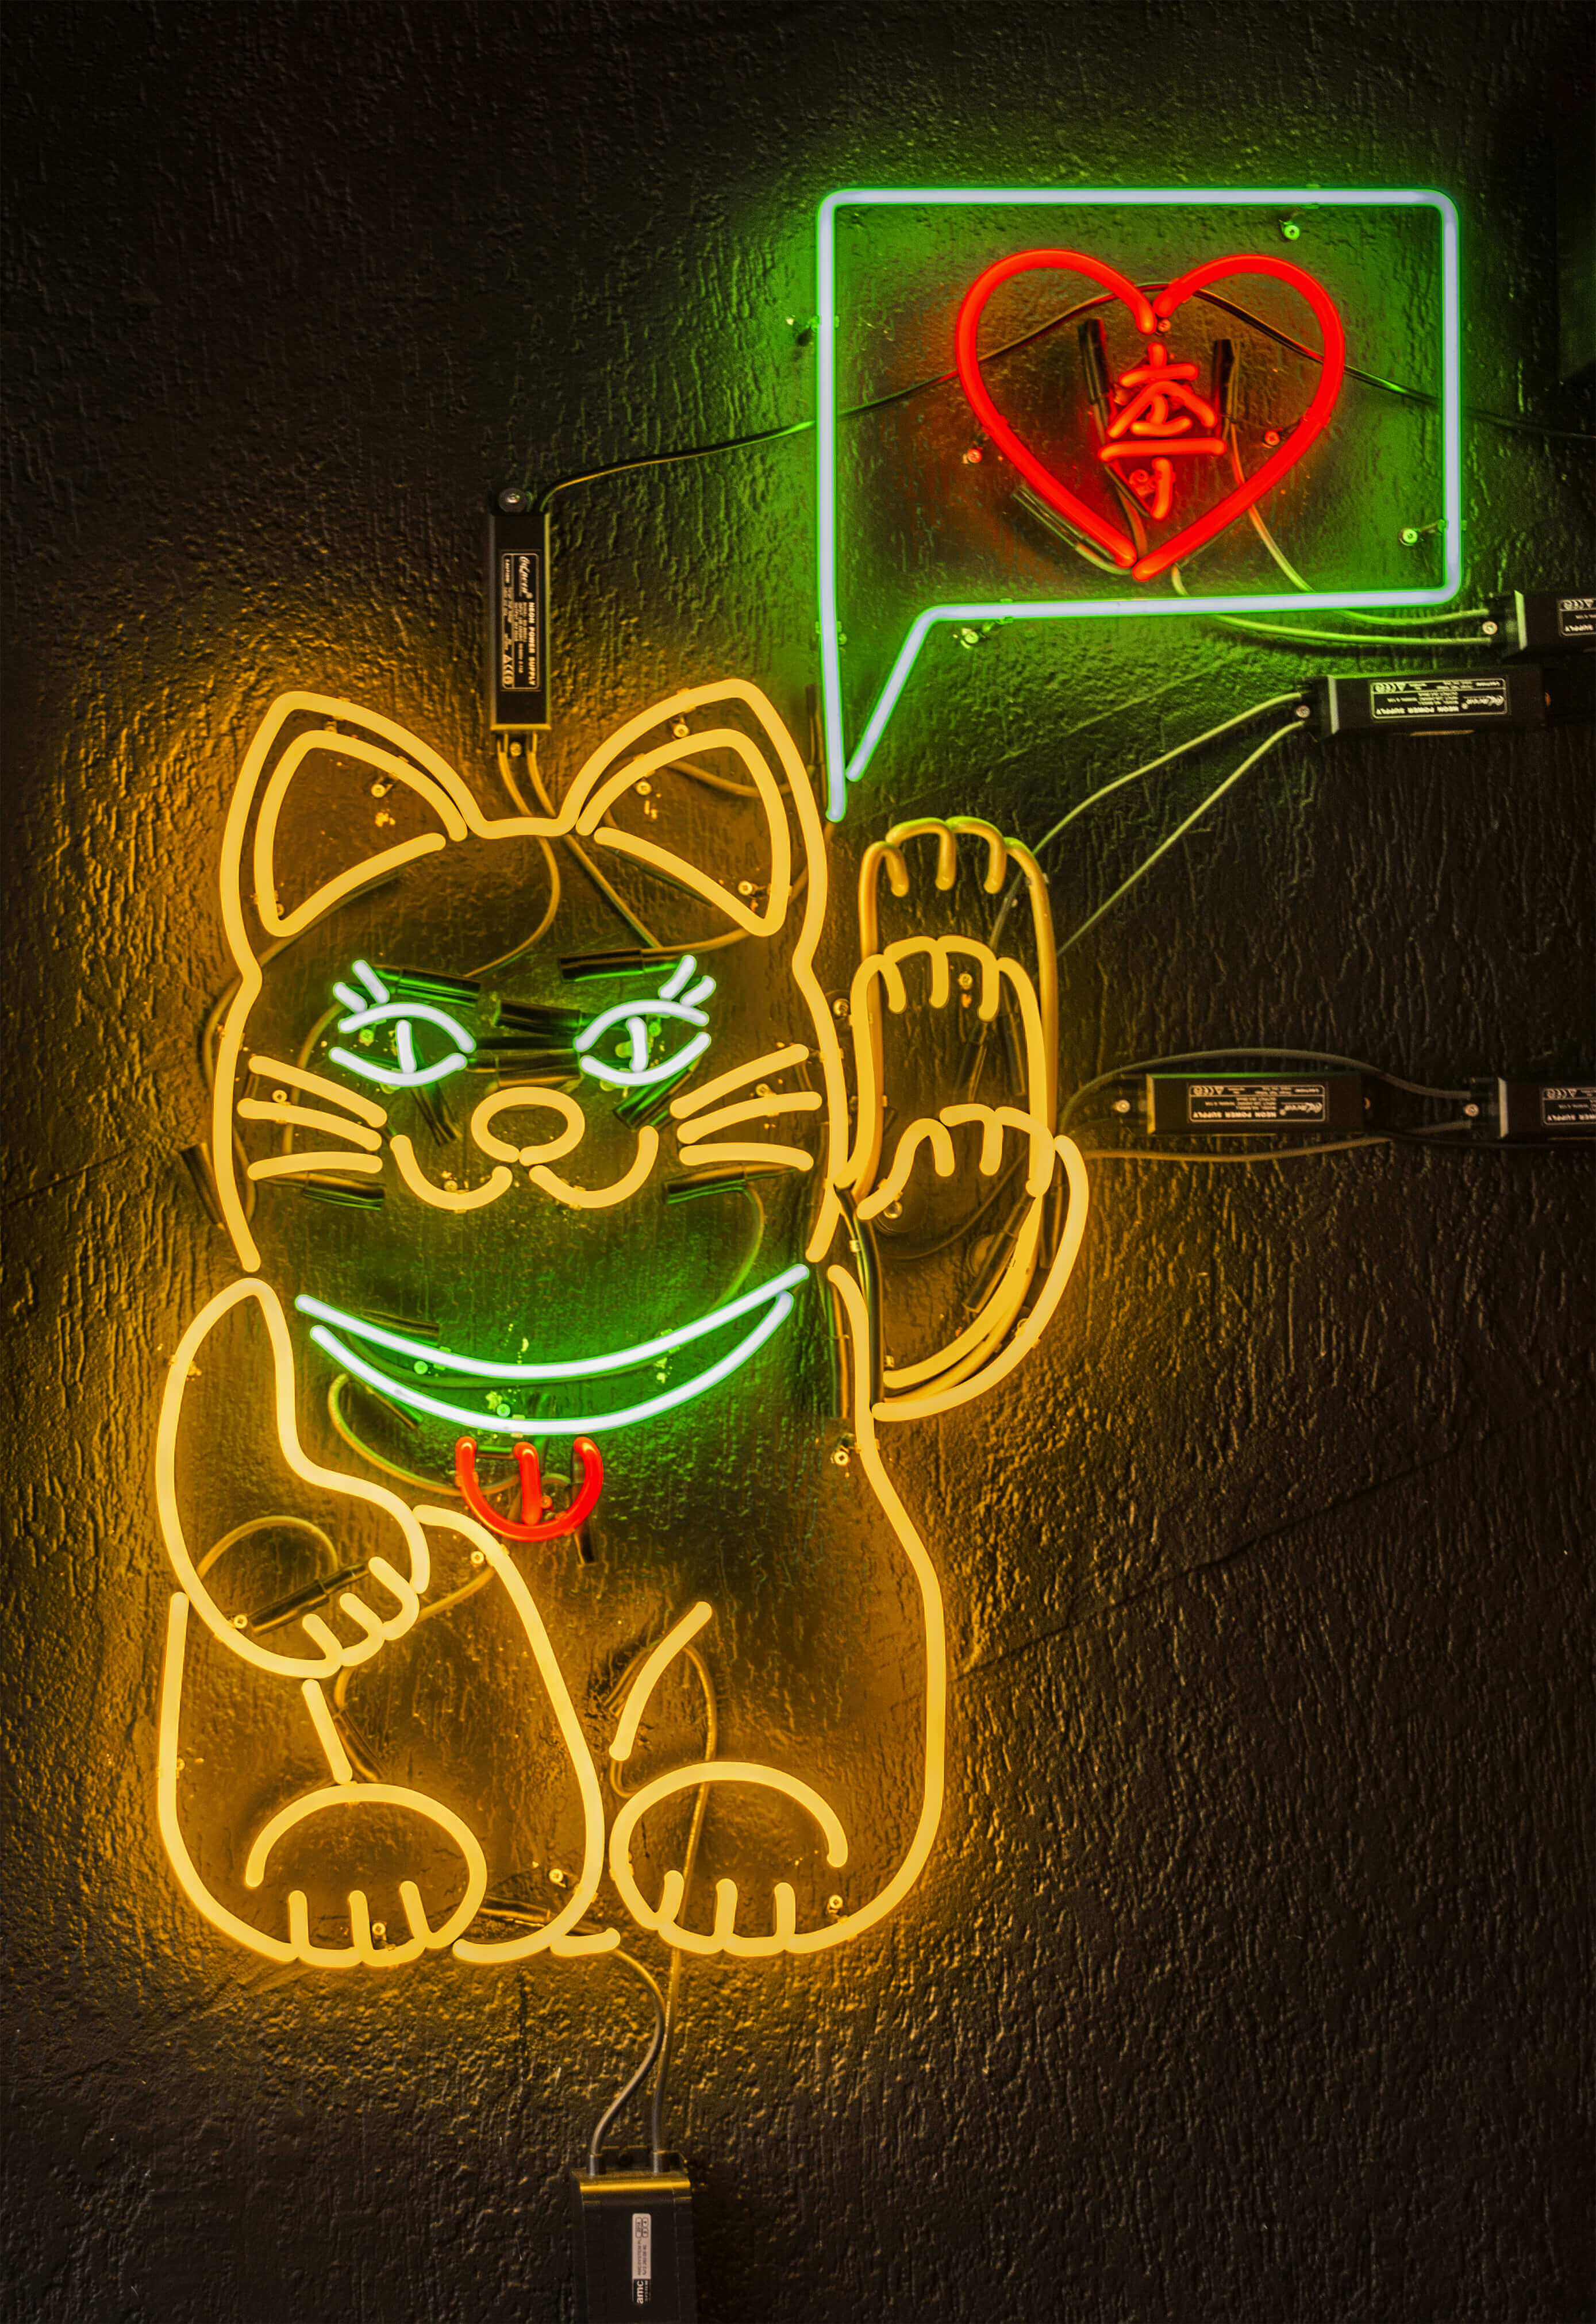 Kotek - neon-chinski-kotek-z-neonu-mrugający-neon-neon-z-przerywnikem-neon-sterownik-ruchu-neonowy-kot-kot-z-neonu-neon-na-scianie-wewnatrz-restauracji-gdansk